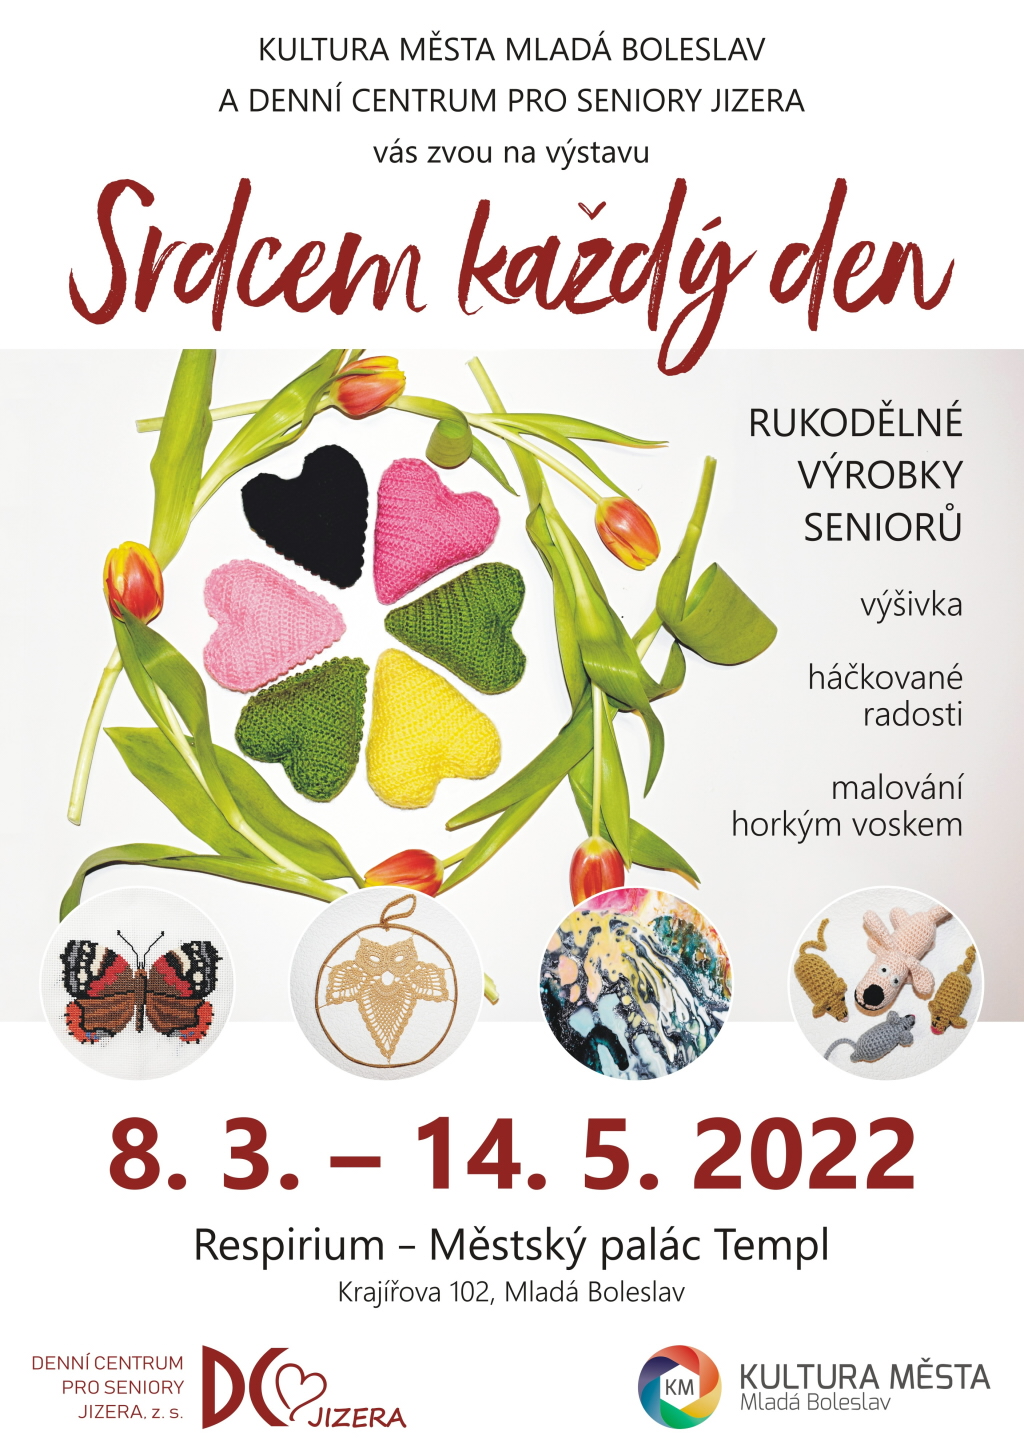 Výstava bude přístupná od 8. března do 14. května 2022 v respiriu Městského paláce Templ (Krajířova 102, Mladá Boleslav). Zdroj: DC Jizera